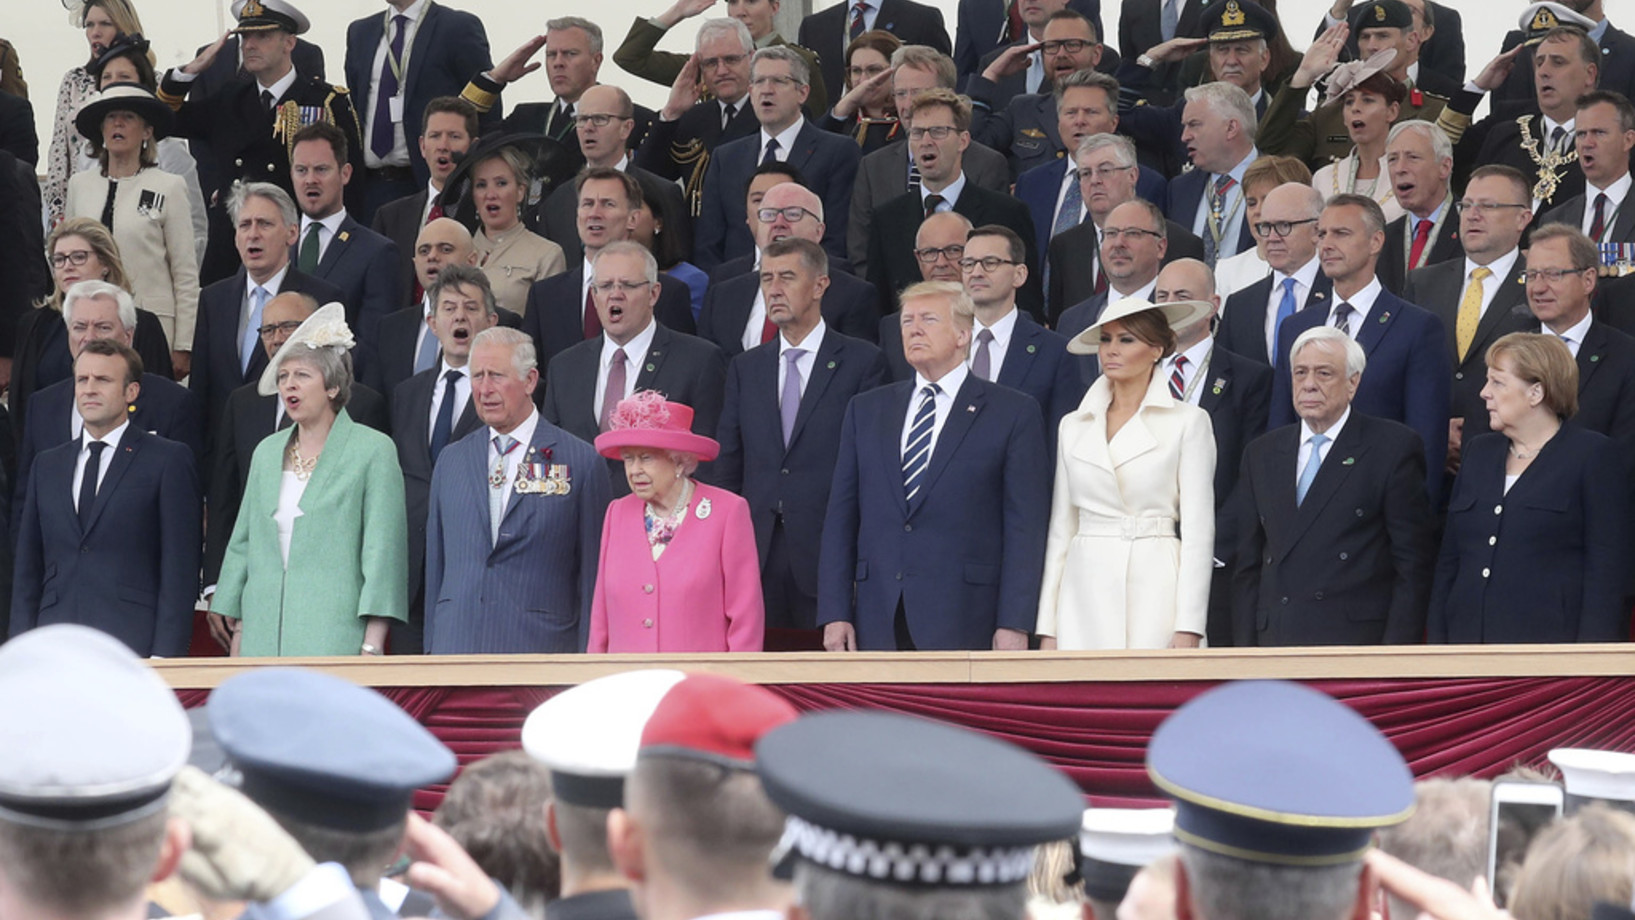 Präsident Trump, die Queen, Theresa May und Angela Merkel gehören zu den Teilnehmern der Gedenkfeier zum 75. Jahrestag des D-Day in Portsmouth am 5. Juni 2019 (England) (Foto: Keystone/AP/Pool/Chris Jackson)